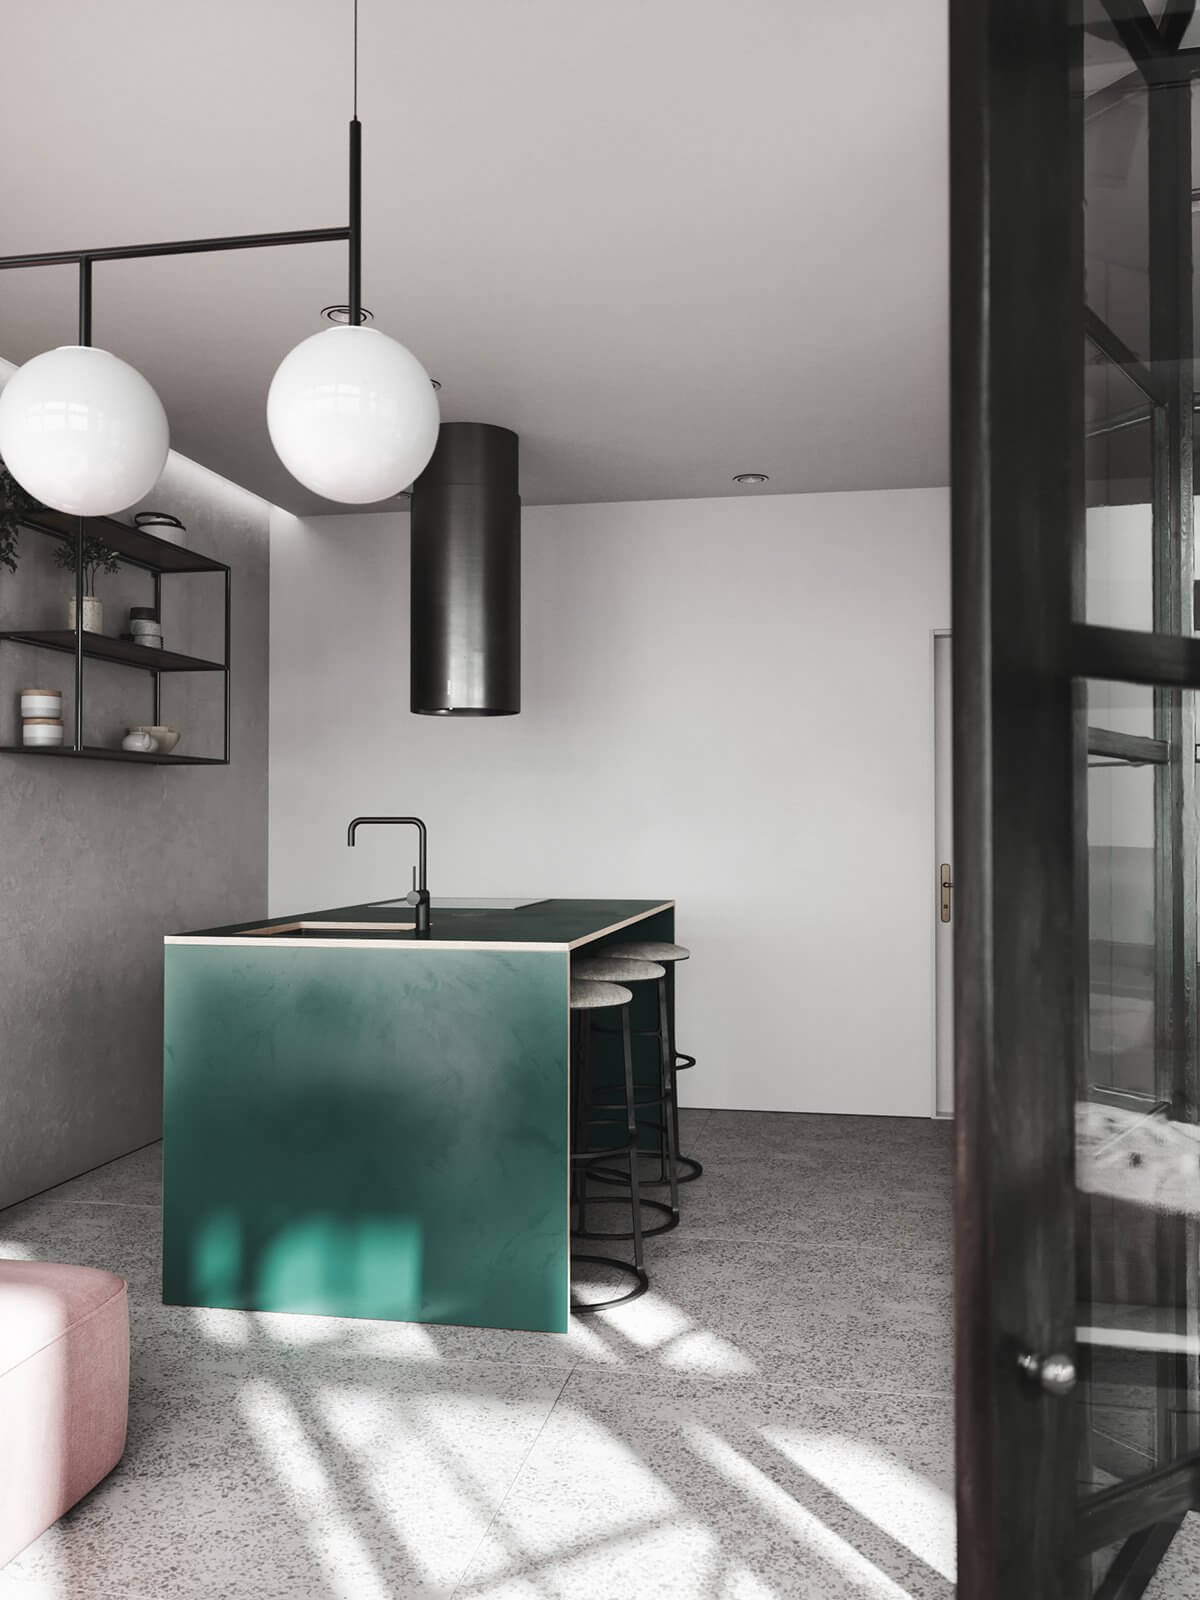 Small apartment kitchen concrete - cgi visualization